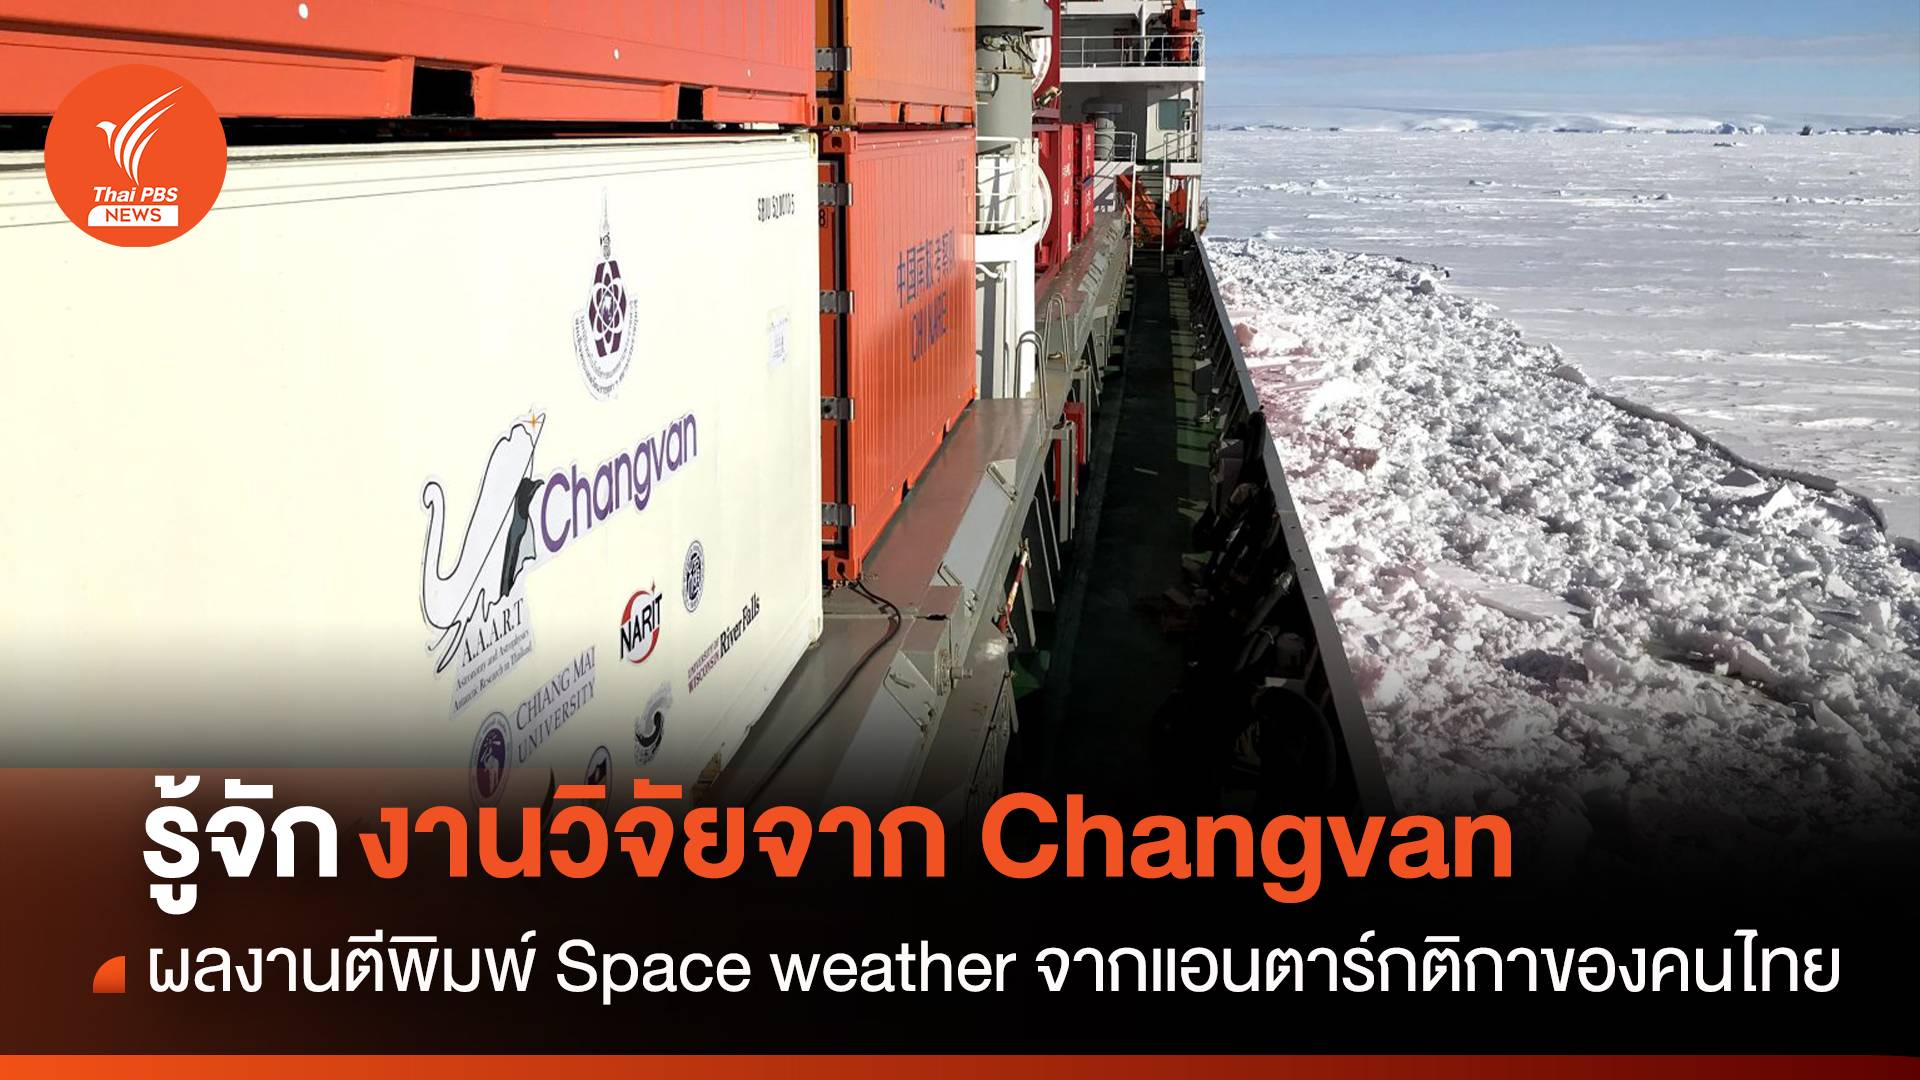 งานวิจัย “ดวงอาทิตย์” ของนักวิจัยไทย ผลงานจากการเดินทางไปยังทวีปแอนตาร์กติกาของ Neutron Monitor